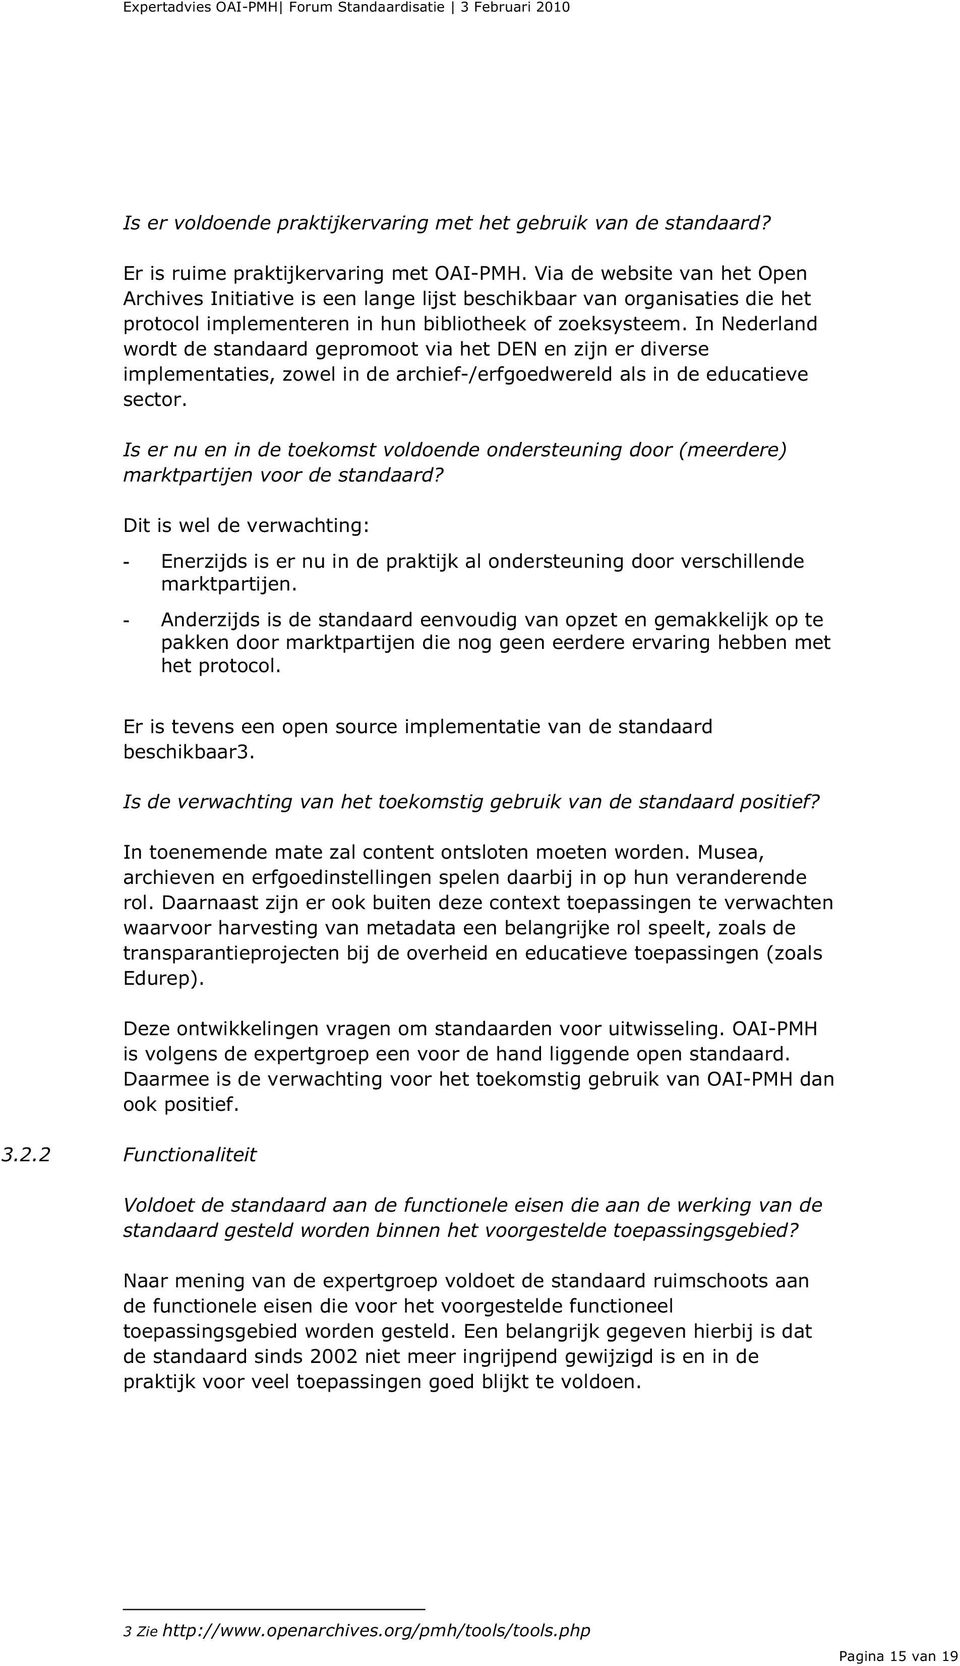 In Nederland wordt de standaard gepromoot via het DEN en zijn er diverse implementaties, zowel in de archief-/erfgoedwereld als in de educatieve sector.